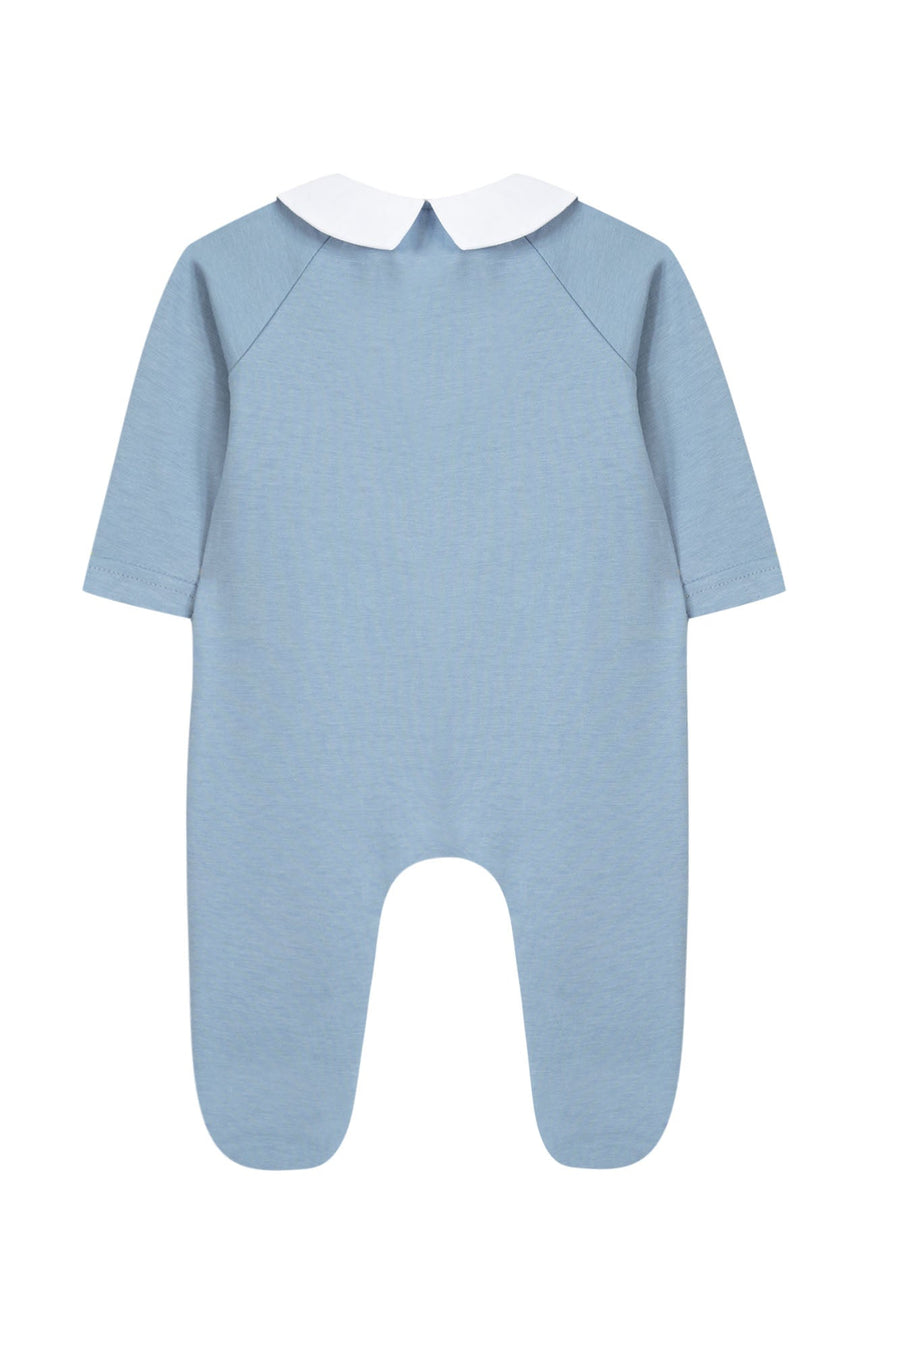 Pyjama bleu grisé Abcd babyboy Tartine et Chocolat